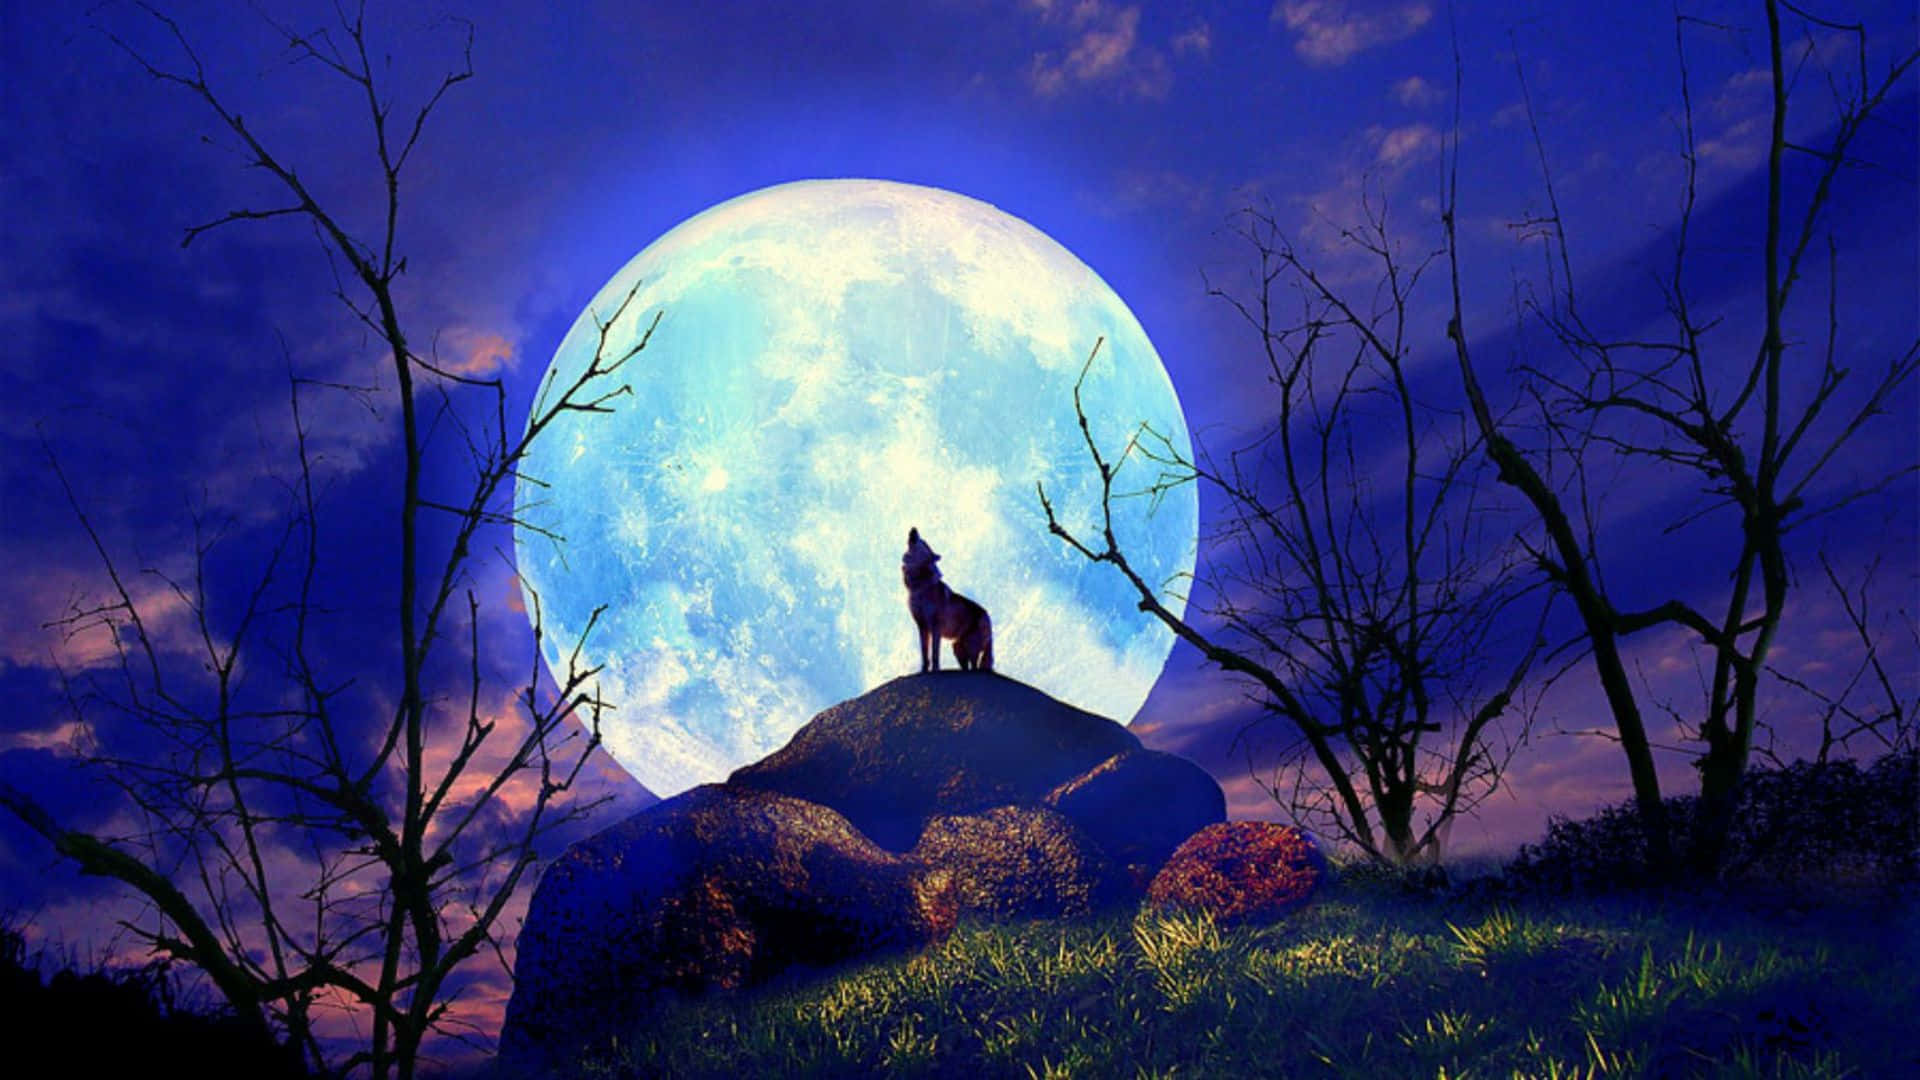 Einwolf Steht Auf Einem Felsen Vor Einem Vollmond.